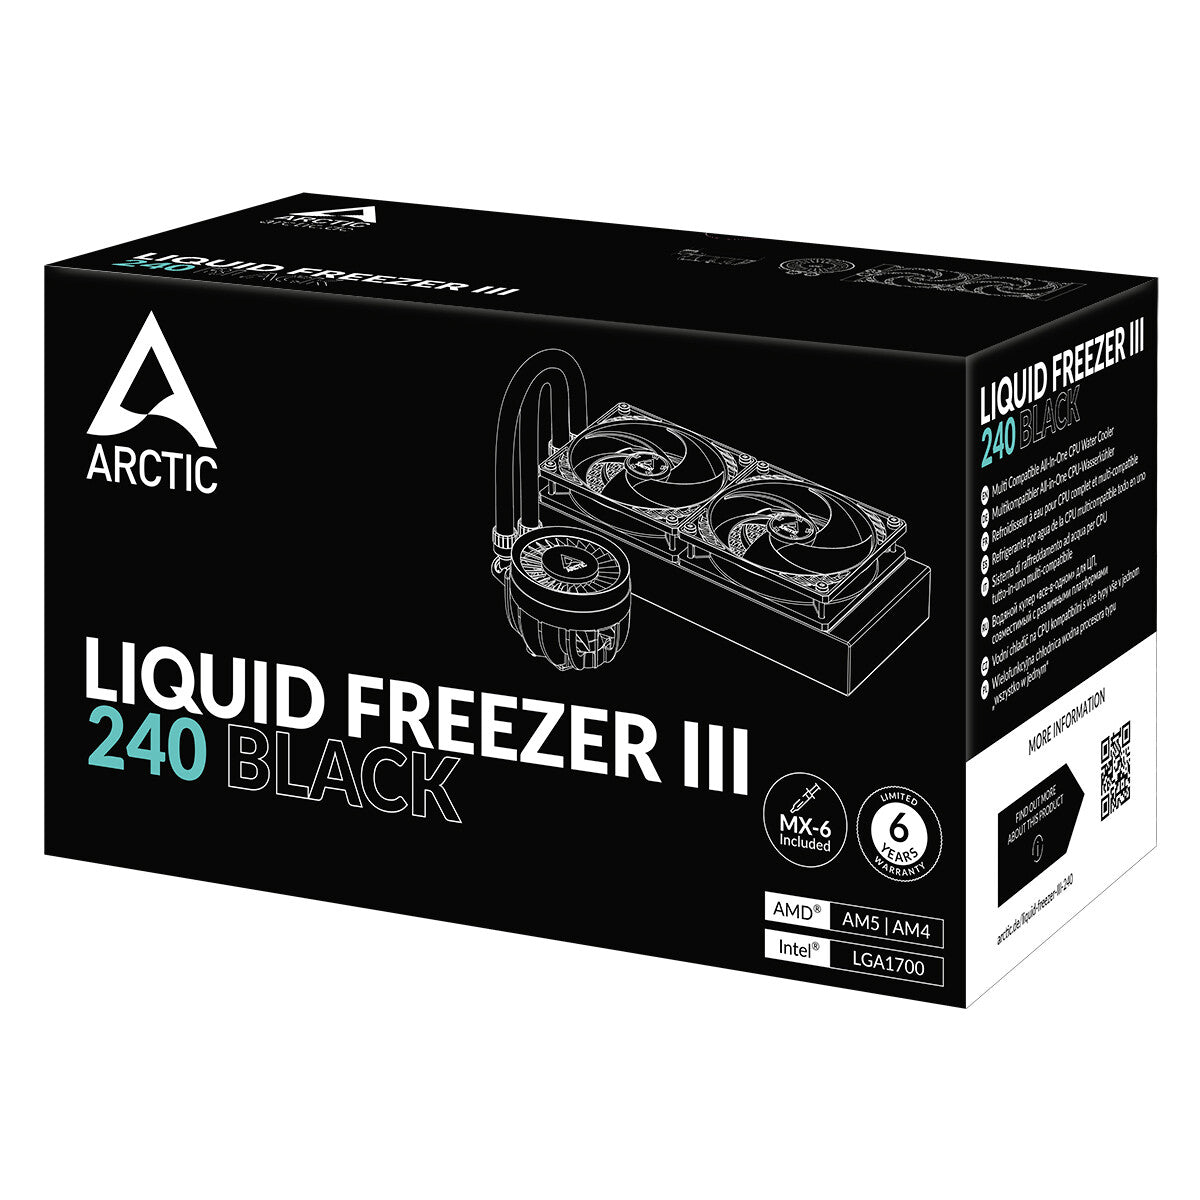 ARCTIC Liquid Freezer III 240 - All-in-One Liquid Processor Cooler in Black - 240mm